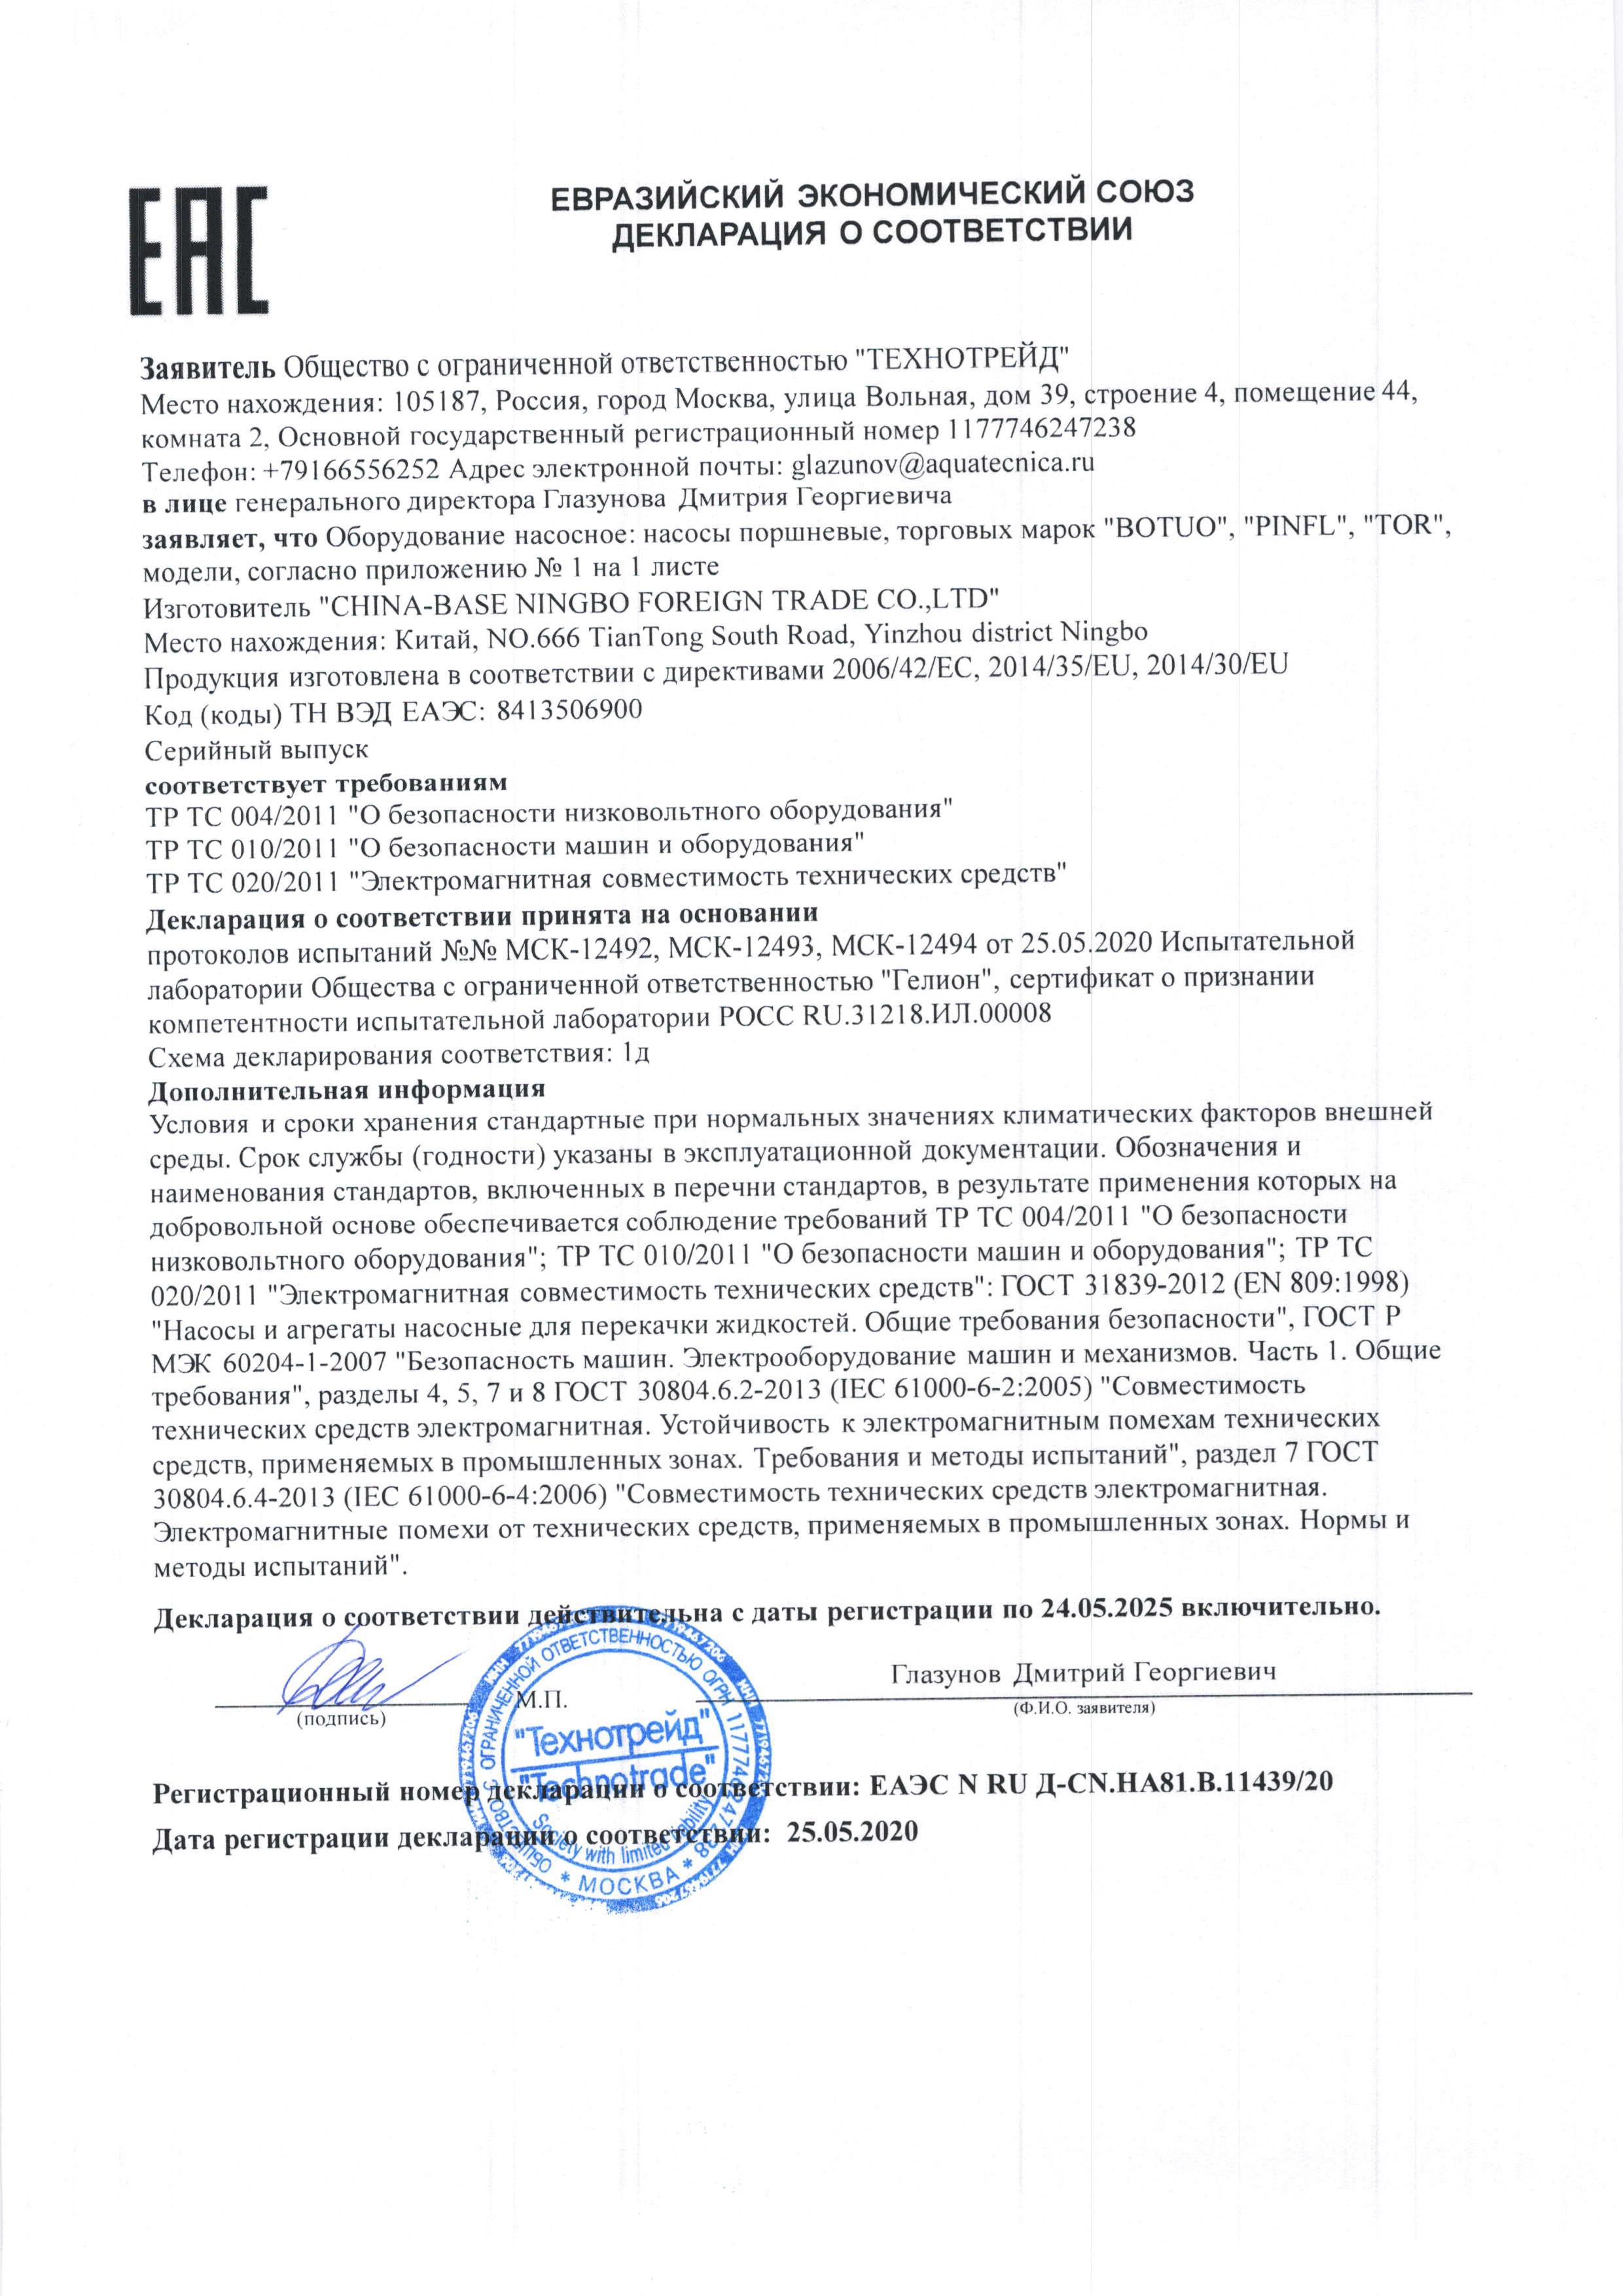 Евразийский экономический союз декларация о соответствии Botuo Pinfl Tor, прочее оборудование